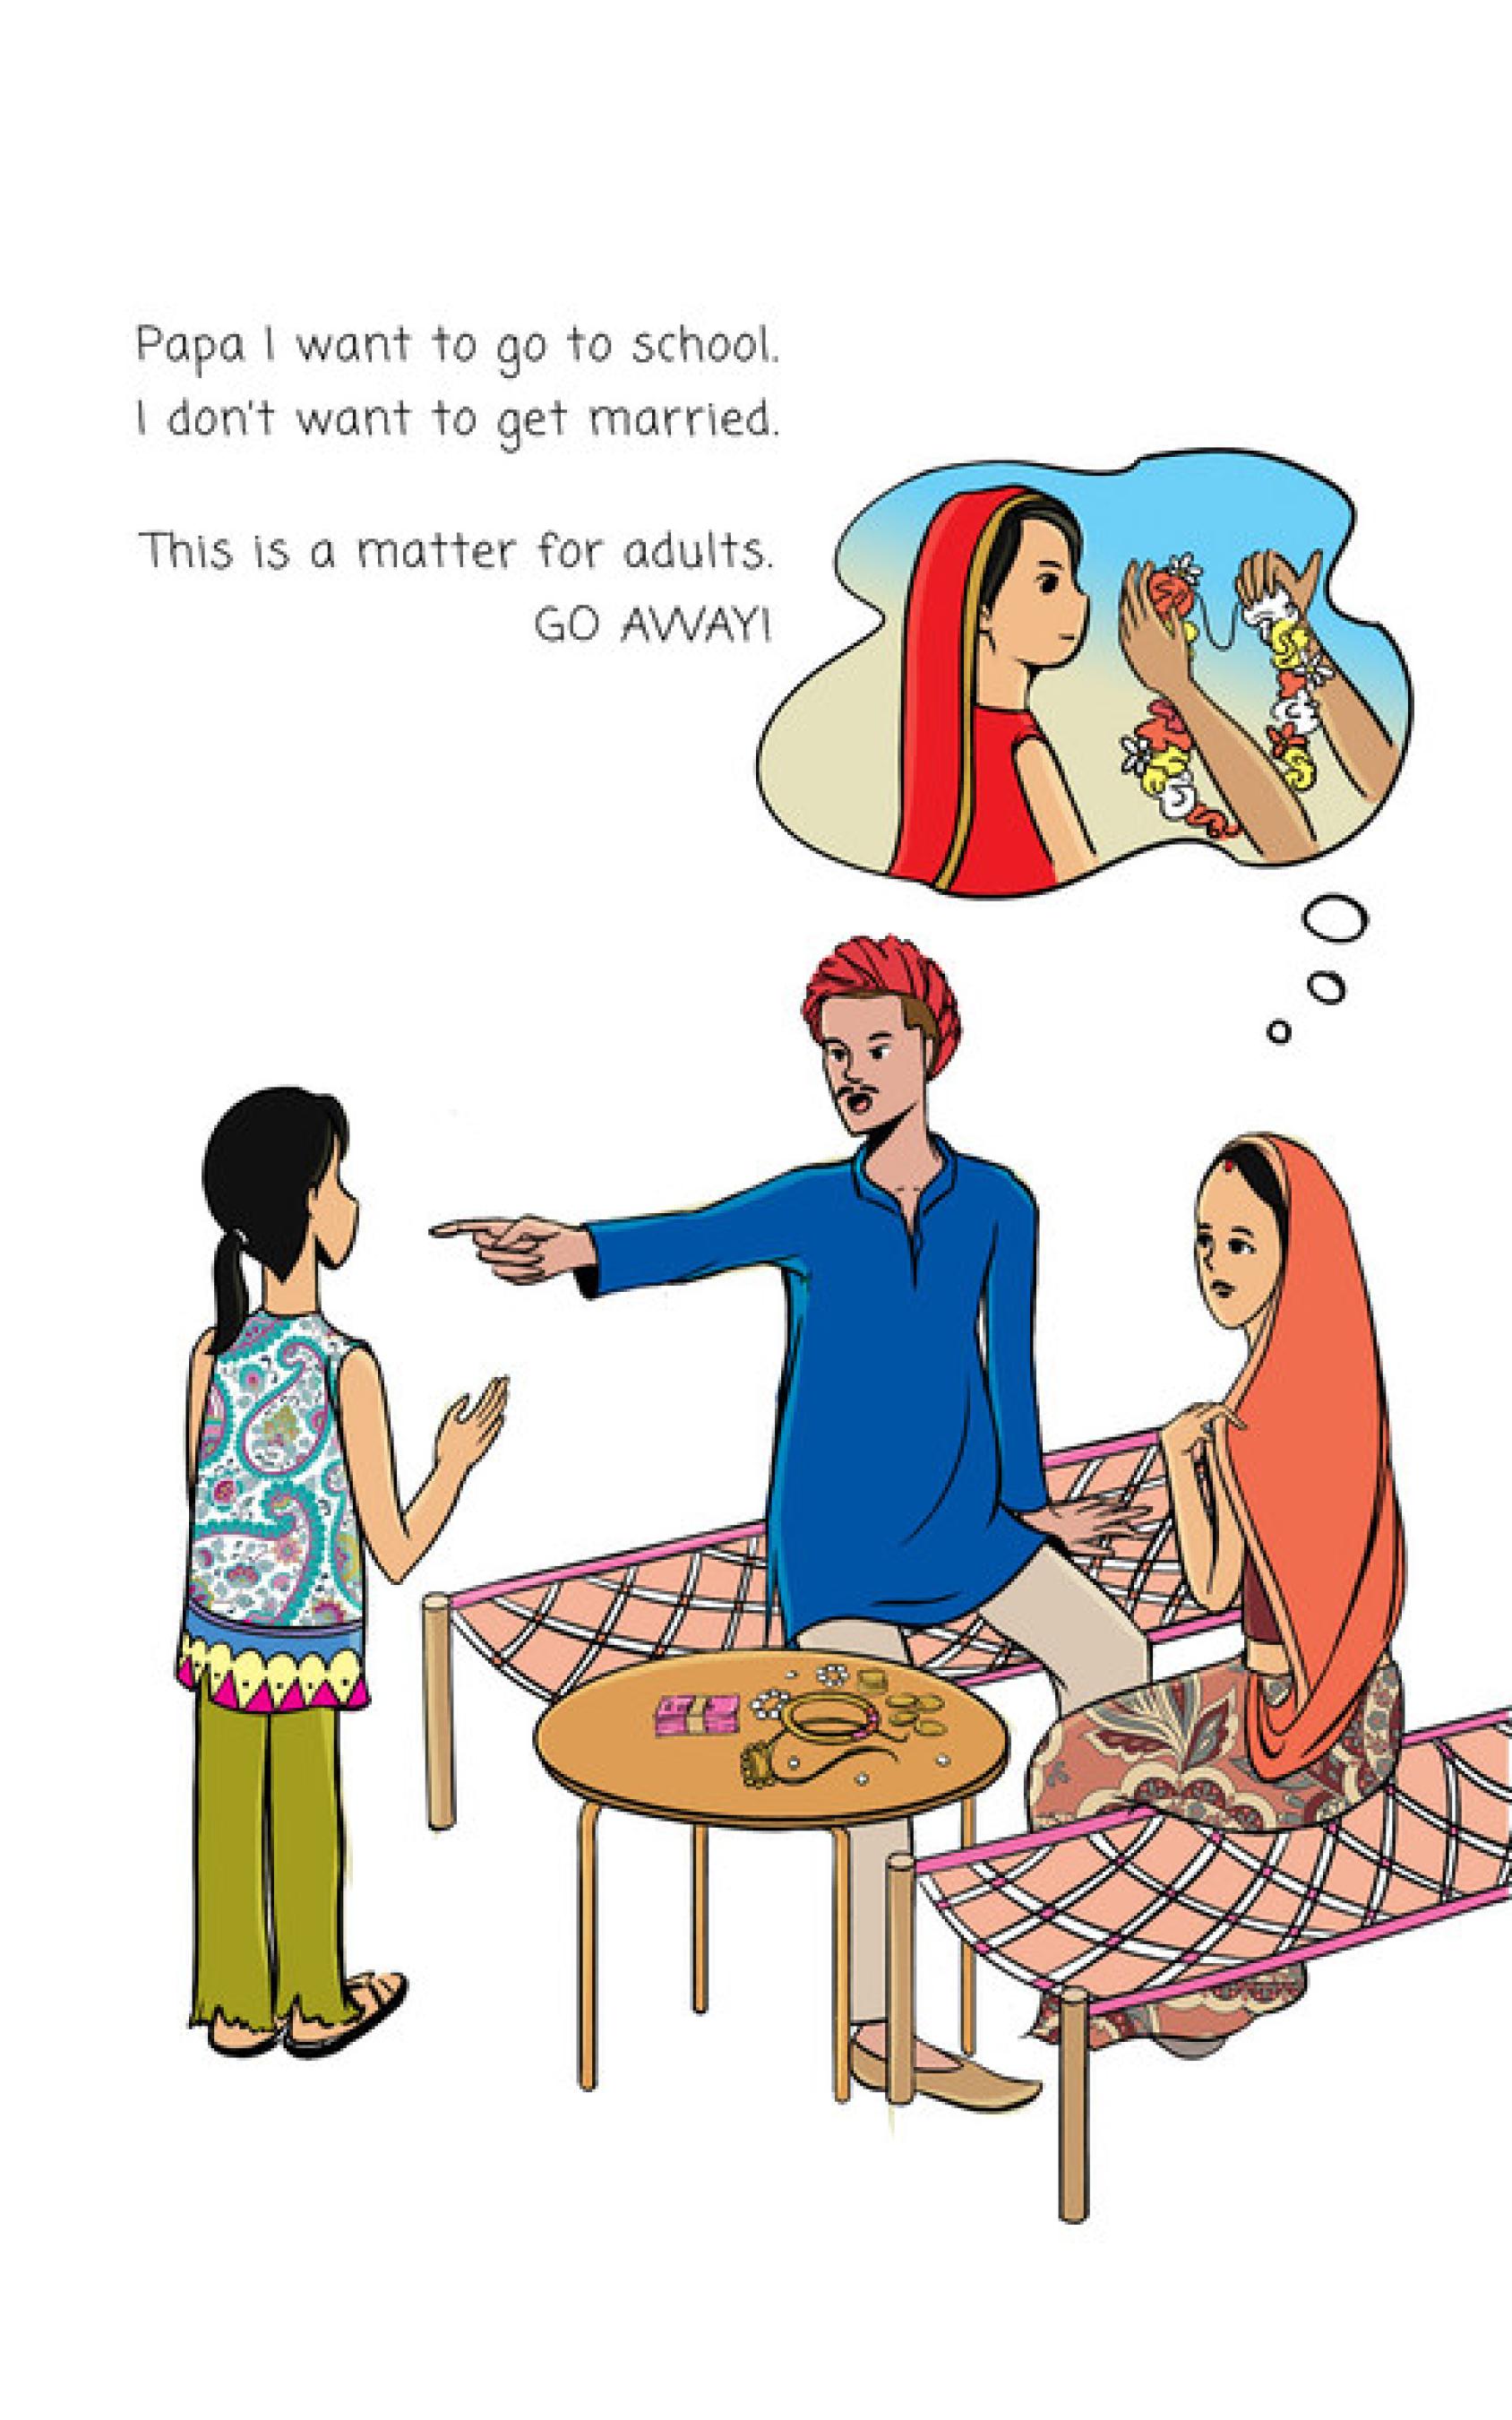 صورة هزلية تظهر عائلة هندية: يشير الأب بإصبعه إلى ابنته الصغيرة ويطالبها بالزواج، وتستمع الأم بصمت، بينما تريد الفتاة الذهاب إلى المدرسة.